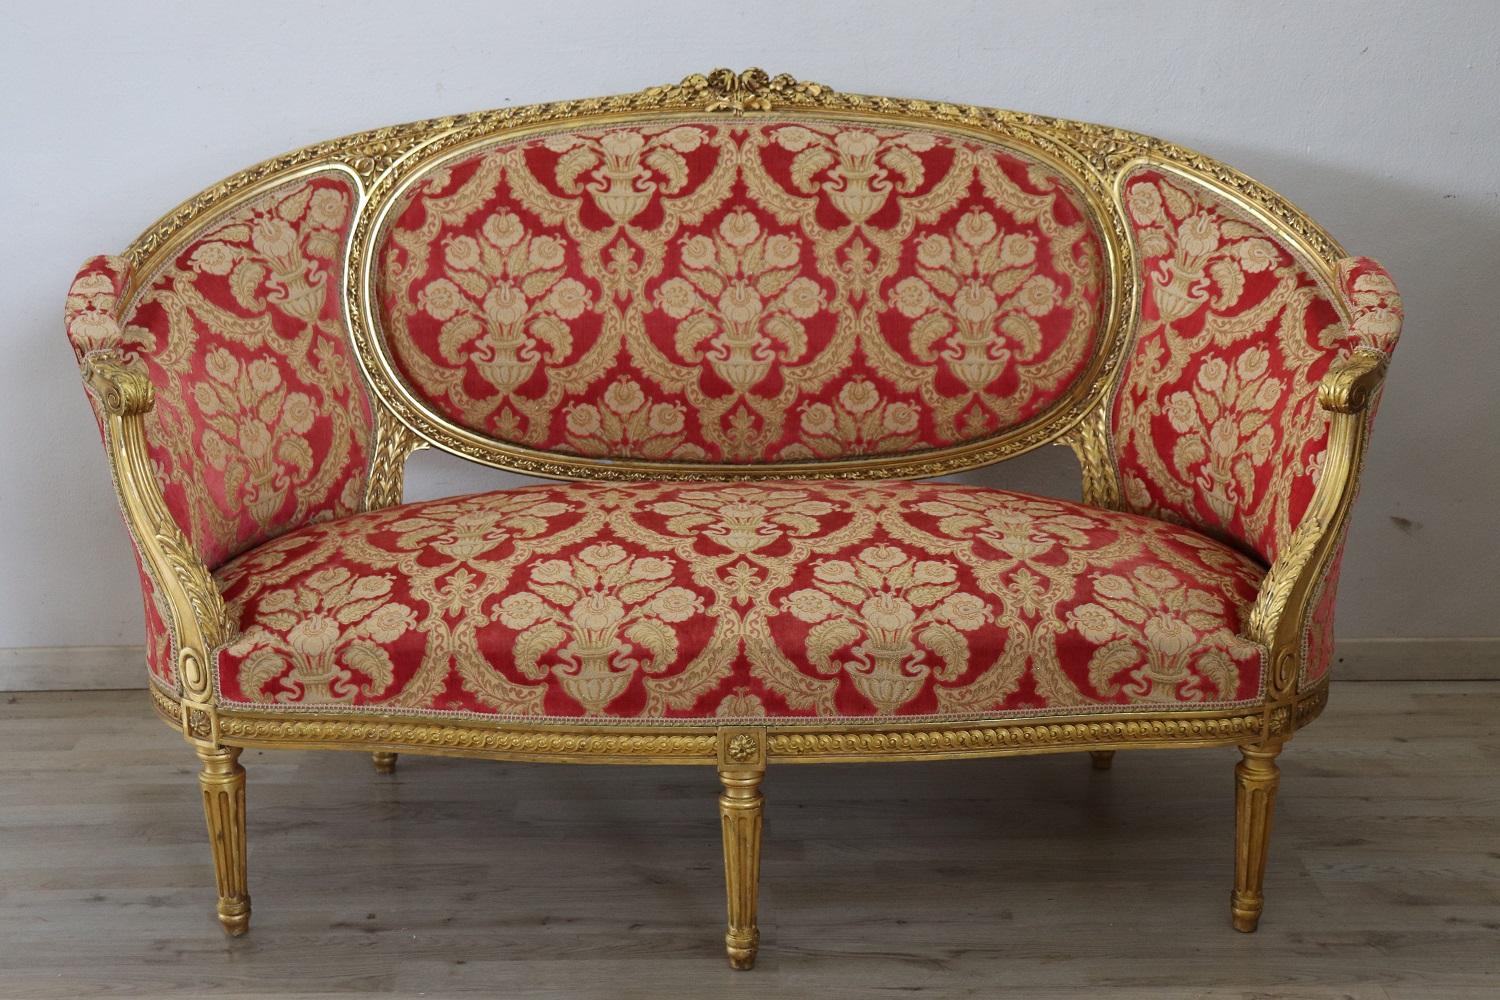 Seltenes komplettes italienisches Luxus-Wohnzimmer-Set im Louis-XVI-Stil der 1930er Jahre im Stil der 1930er Jahre mit:
1 Großes Sofa
4 Sessel

Ein raffiniertes Wohnzimmer aus geschnitztem und vergoldetem Holz. Das Wohnzimmer stammt aus einer